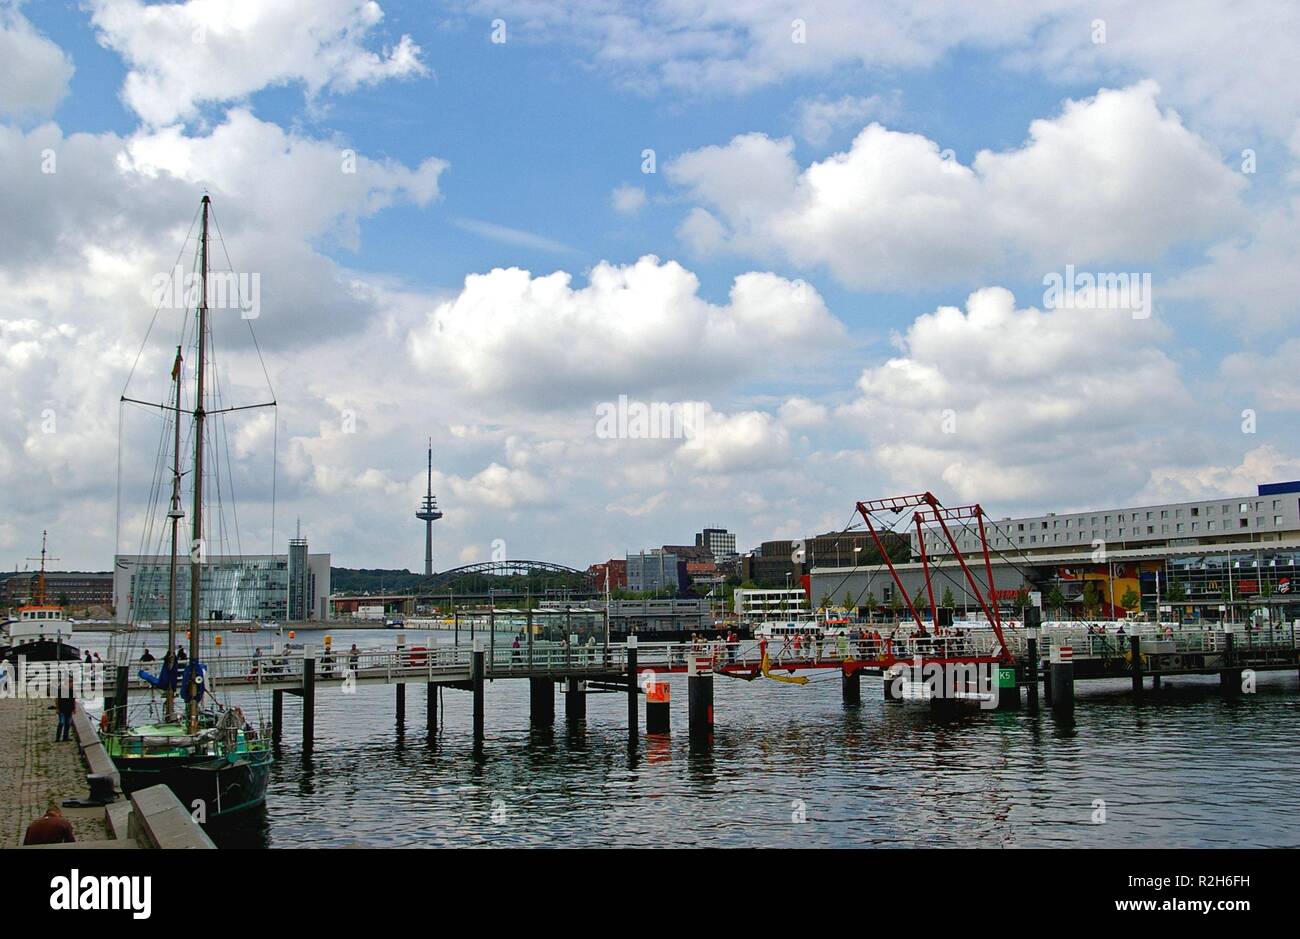 harbor in kiel Stock Photo